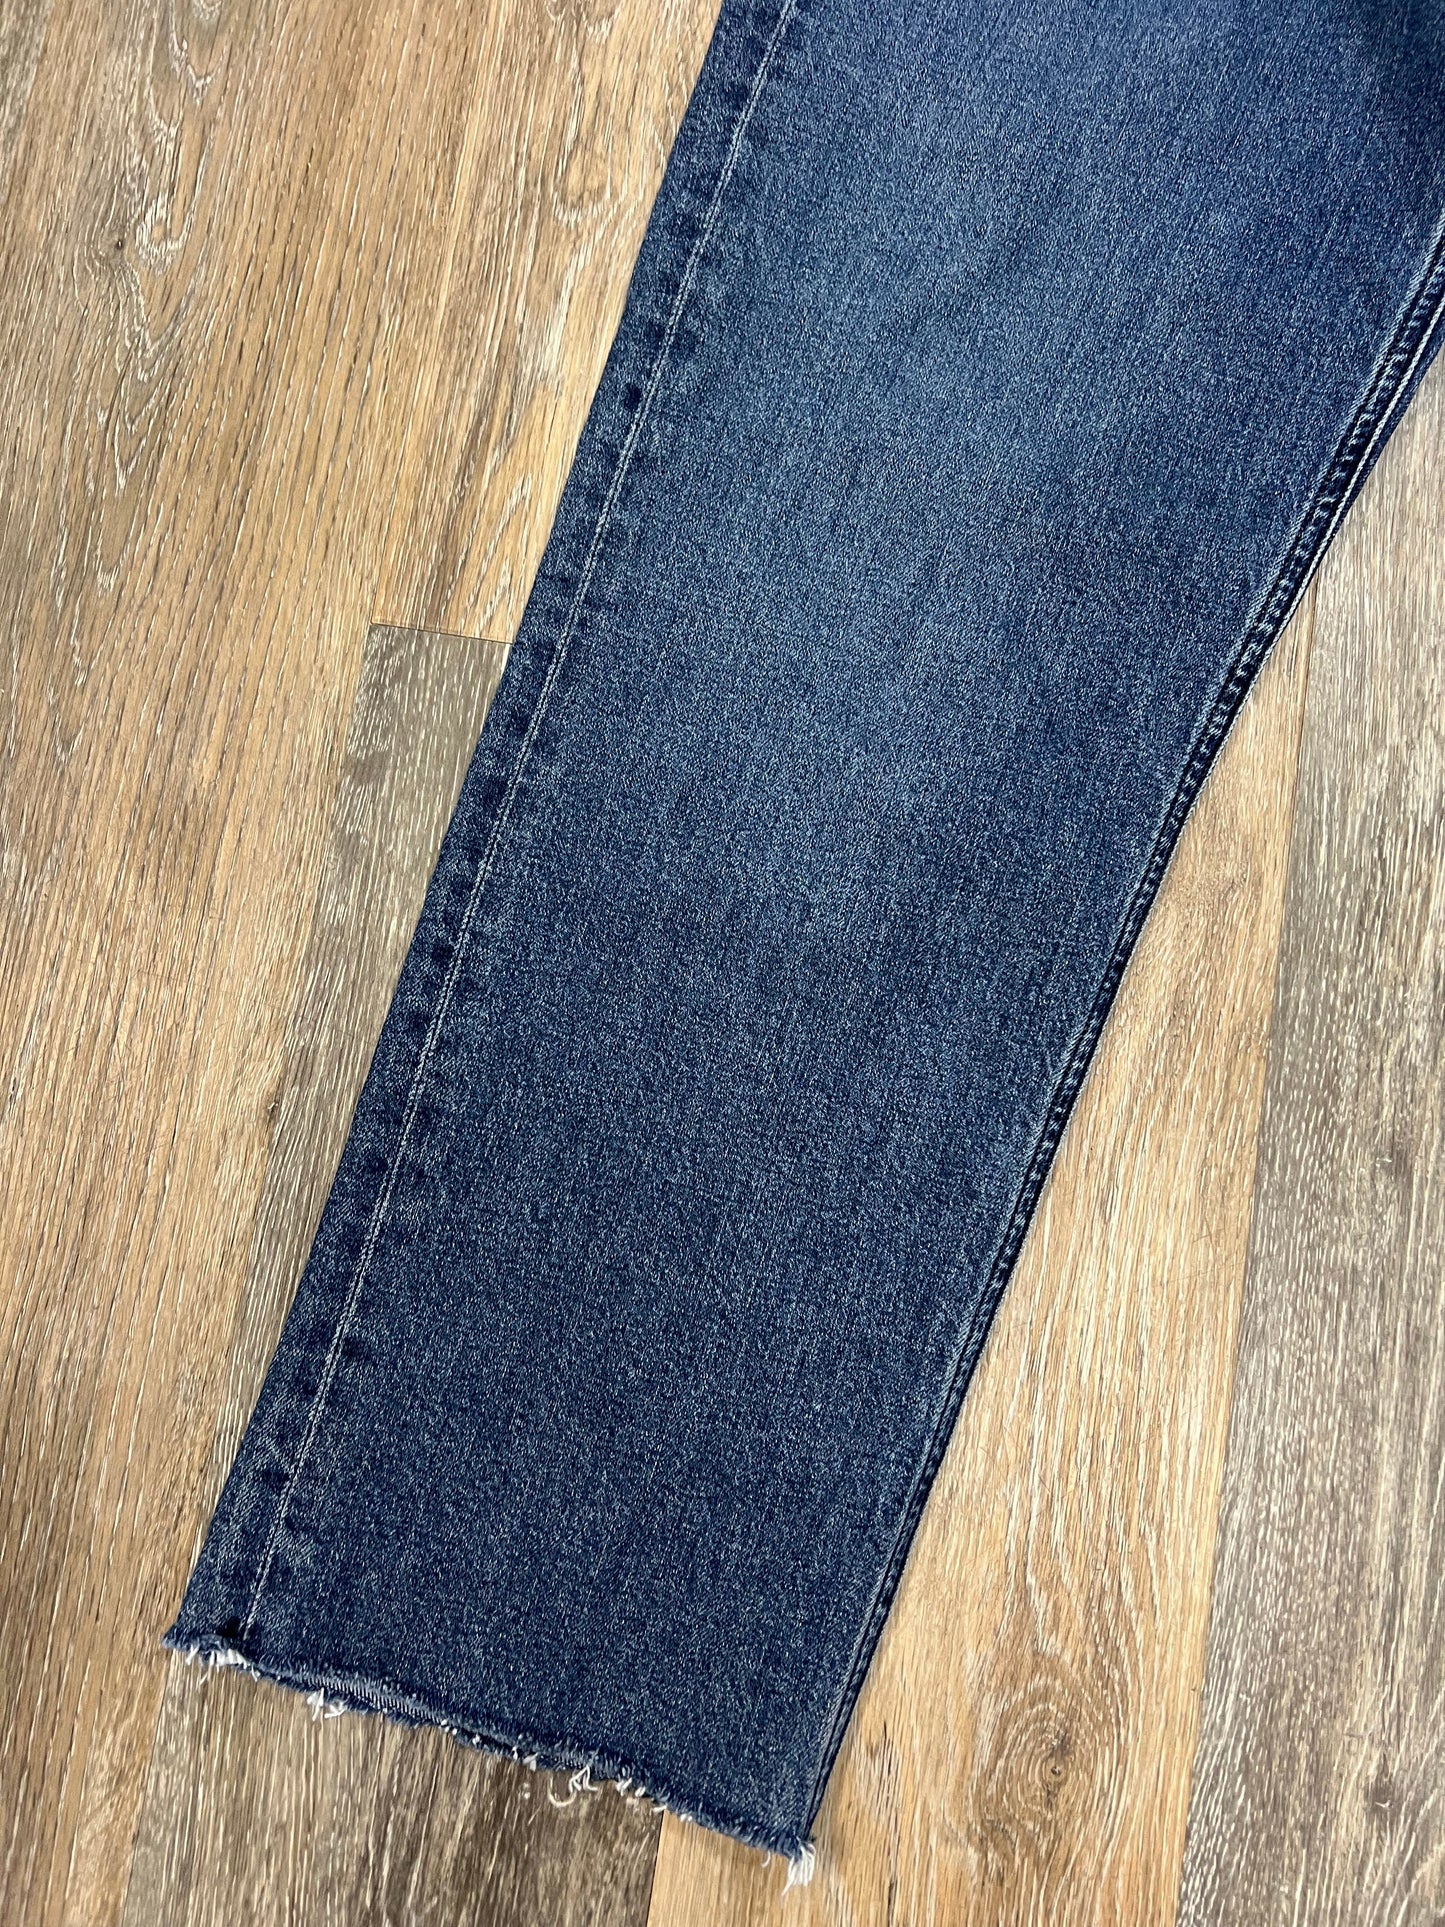 Blue Denim Jeans Designer Agolde, Size 8/29